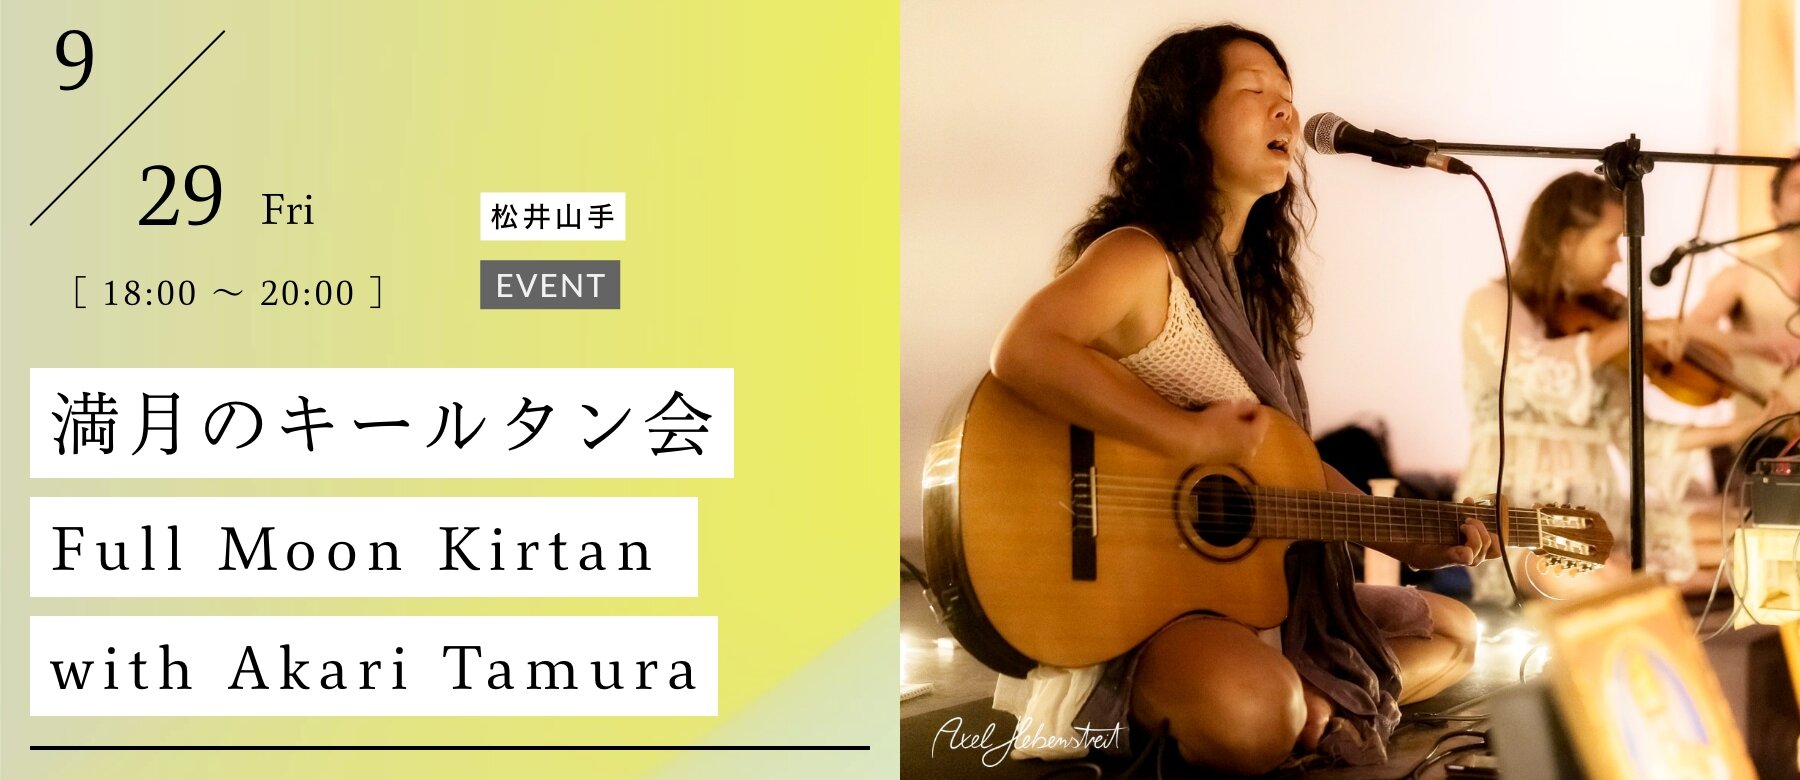 満月のキールタン会 〜Full Moon Kirtan with Akari Tamura〜